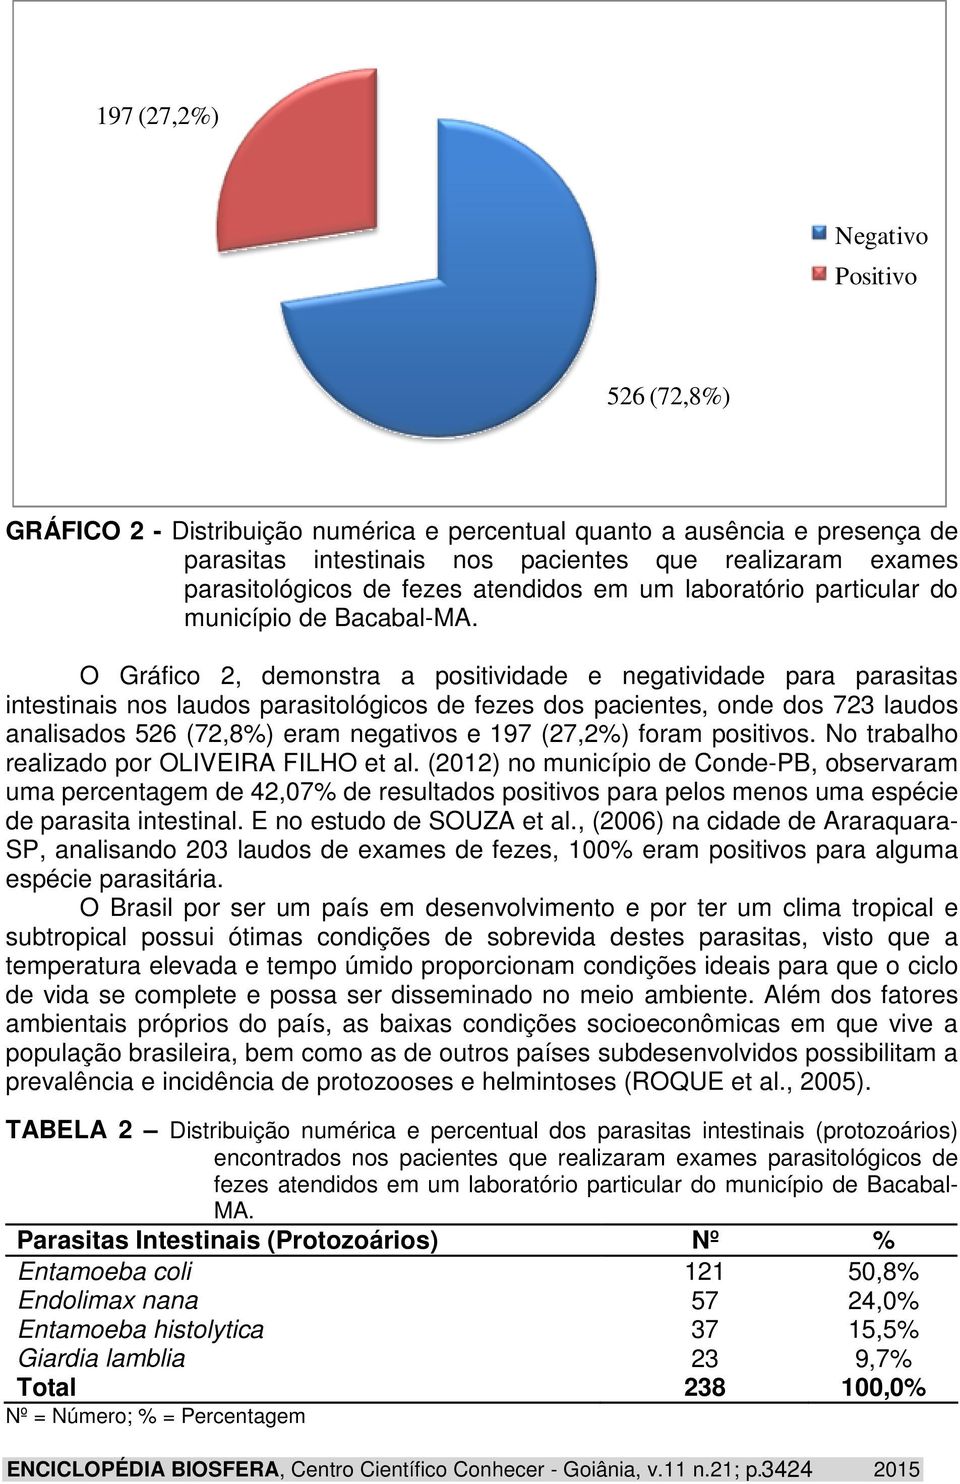 O Gráfico 2, demonstra a positividade e negatividade para parasitas intestinais nos laudos parasitológicos de fezes dos pacientes, onde dos 723 laudos analisados 526 (72,8%) eram negativos e 197